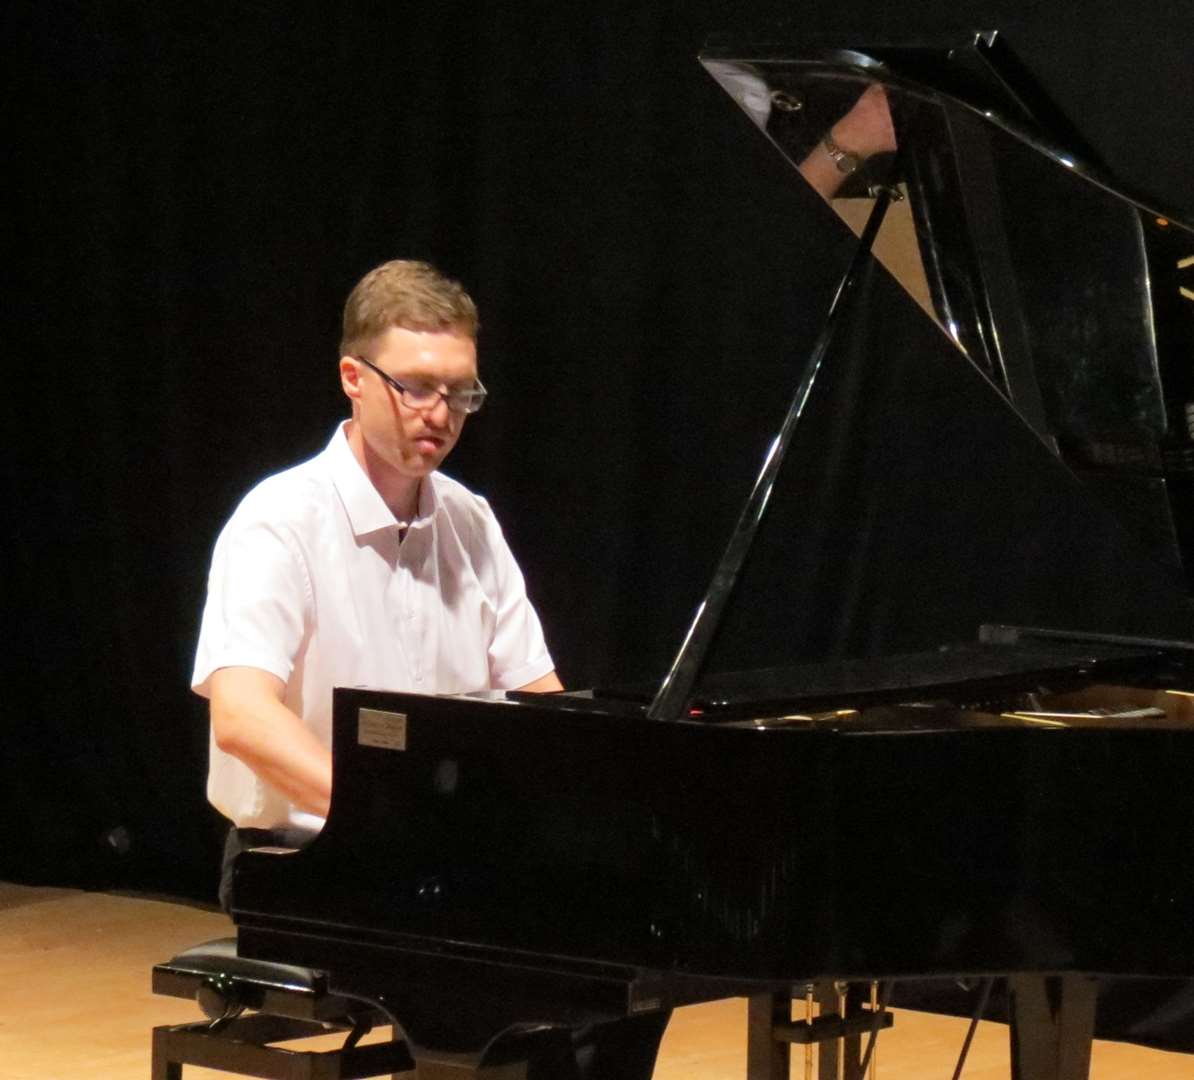 מוסיקה ונגינה - פסנתר וקלידים | אלכס מורה לפסנתר אורגן וחל... 